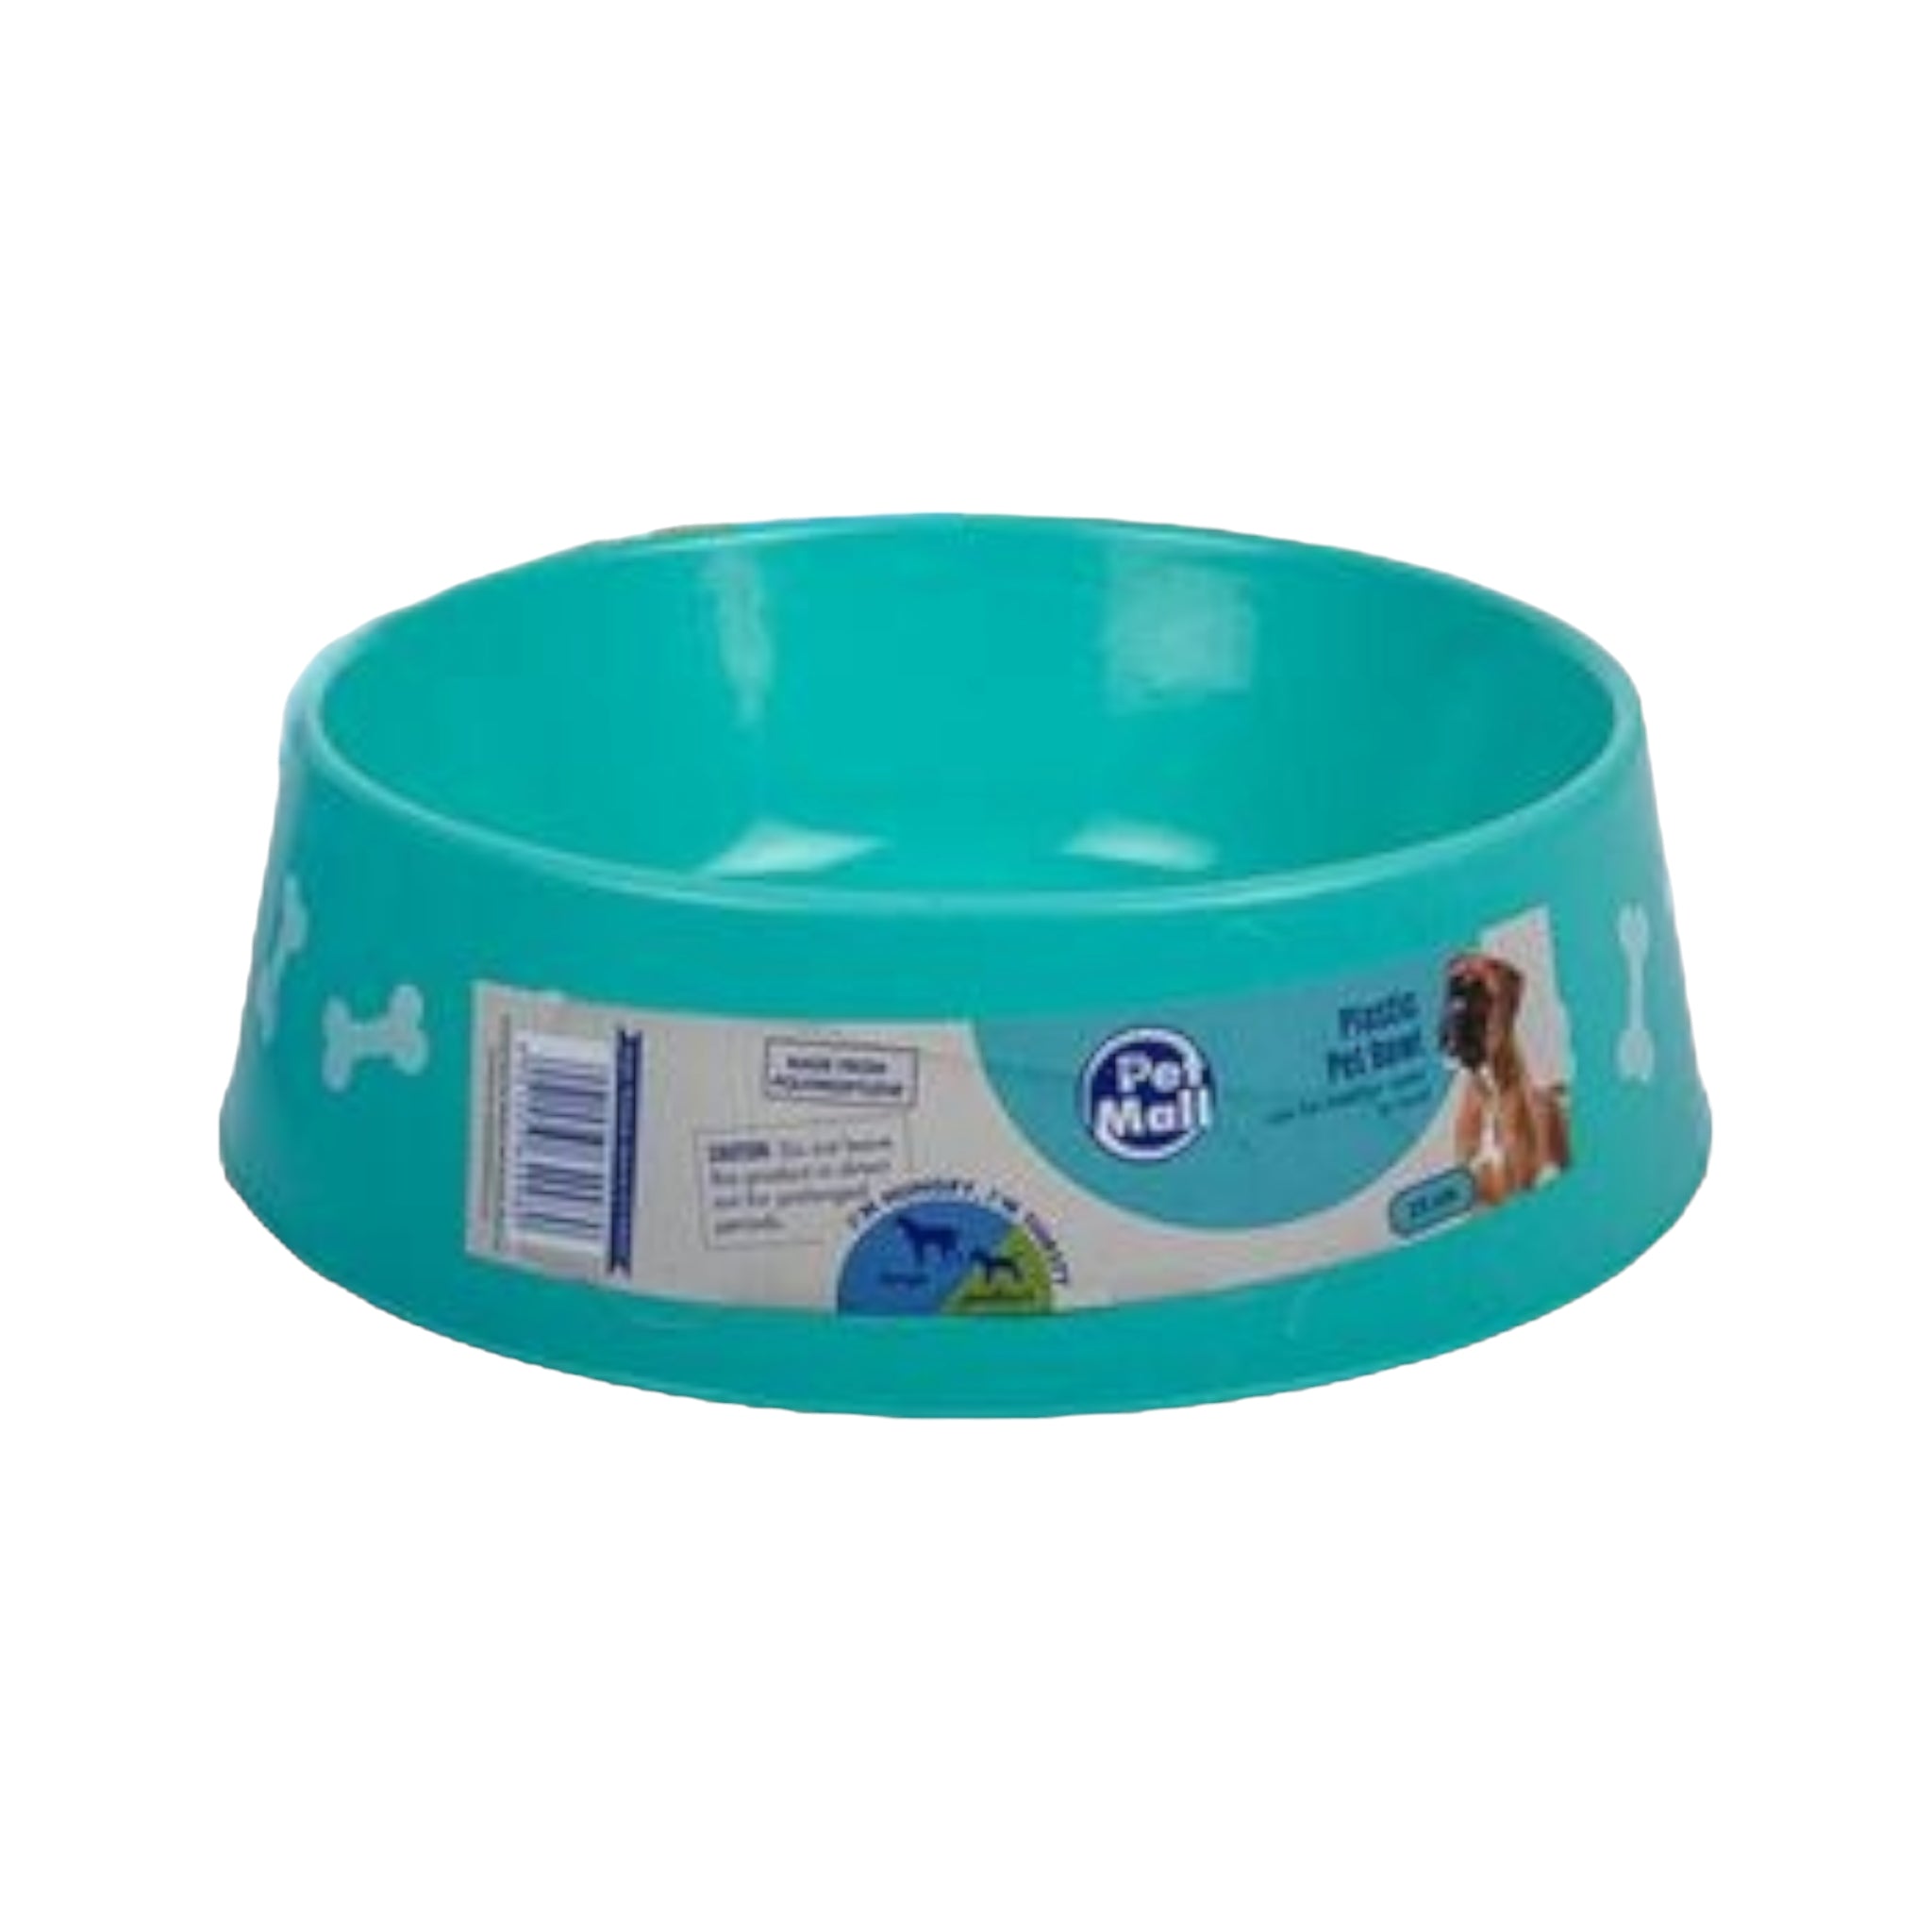 Pet Mall Dog/Cat Plastic Bowl Large 25cm 1pc